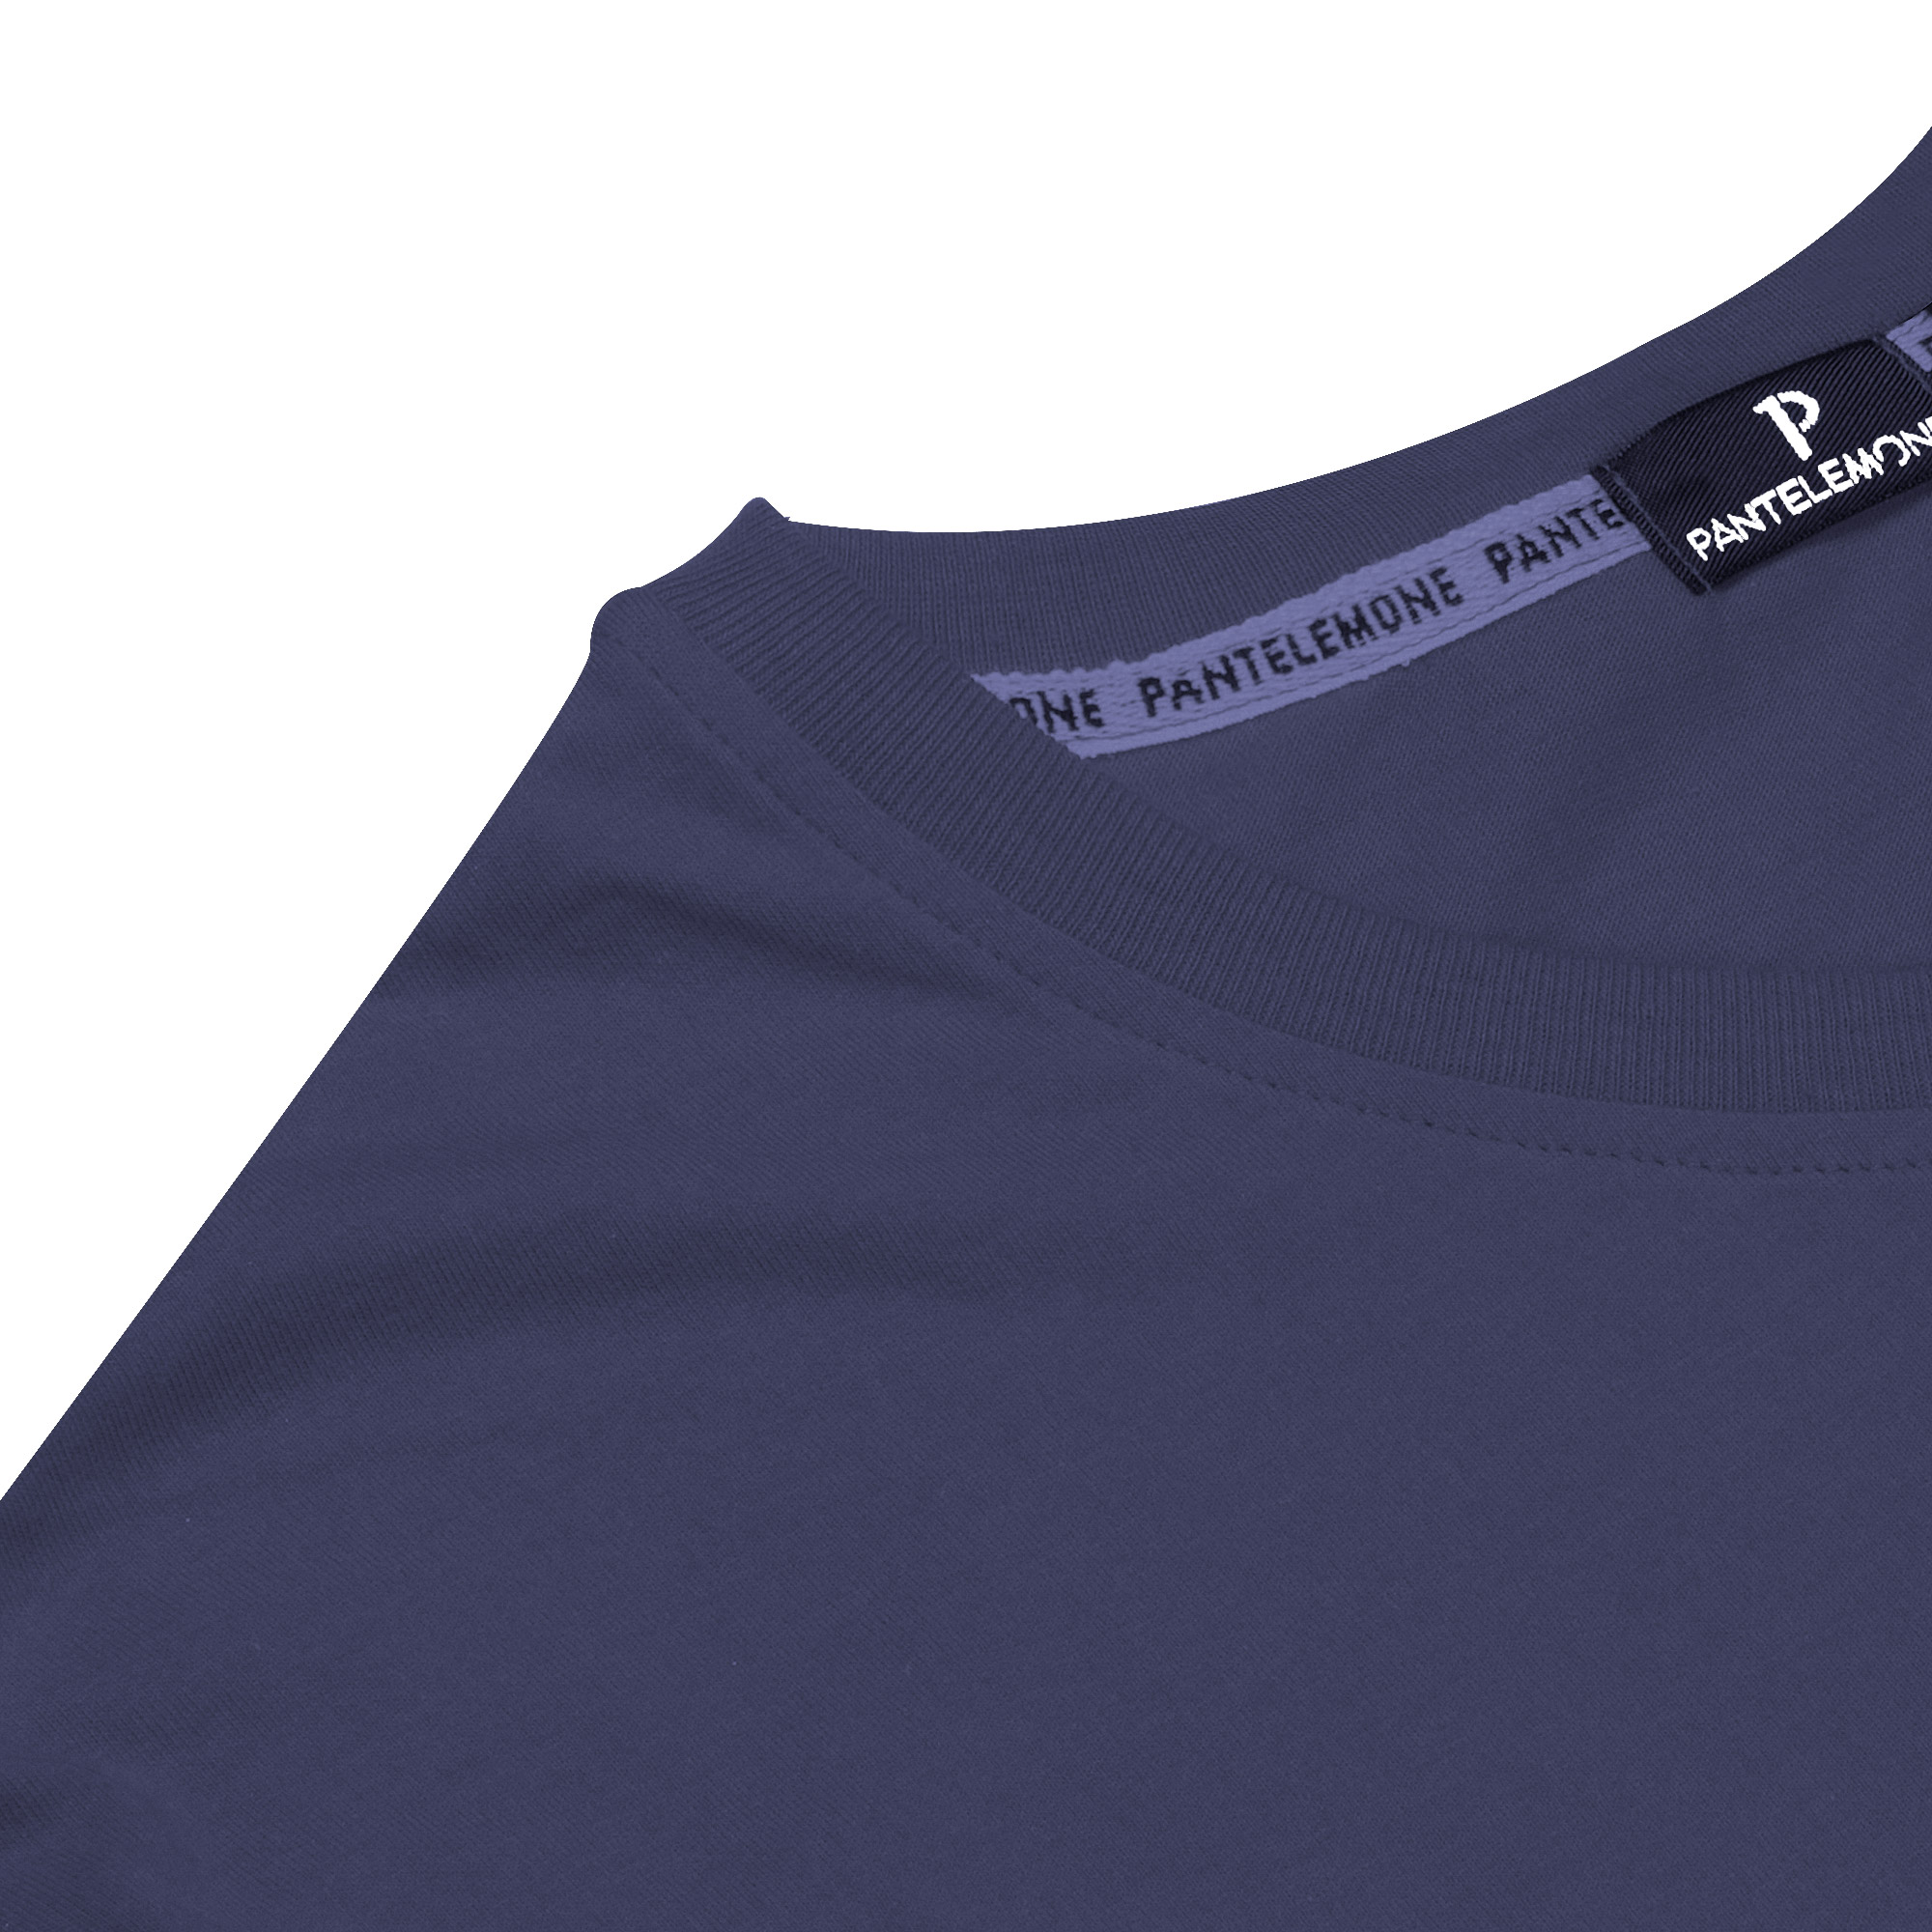 Мужская футболка Pantelemone MF-898 темно-синяя 52, цвет темно-синий, размер 52 - фото 3